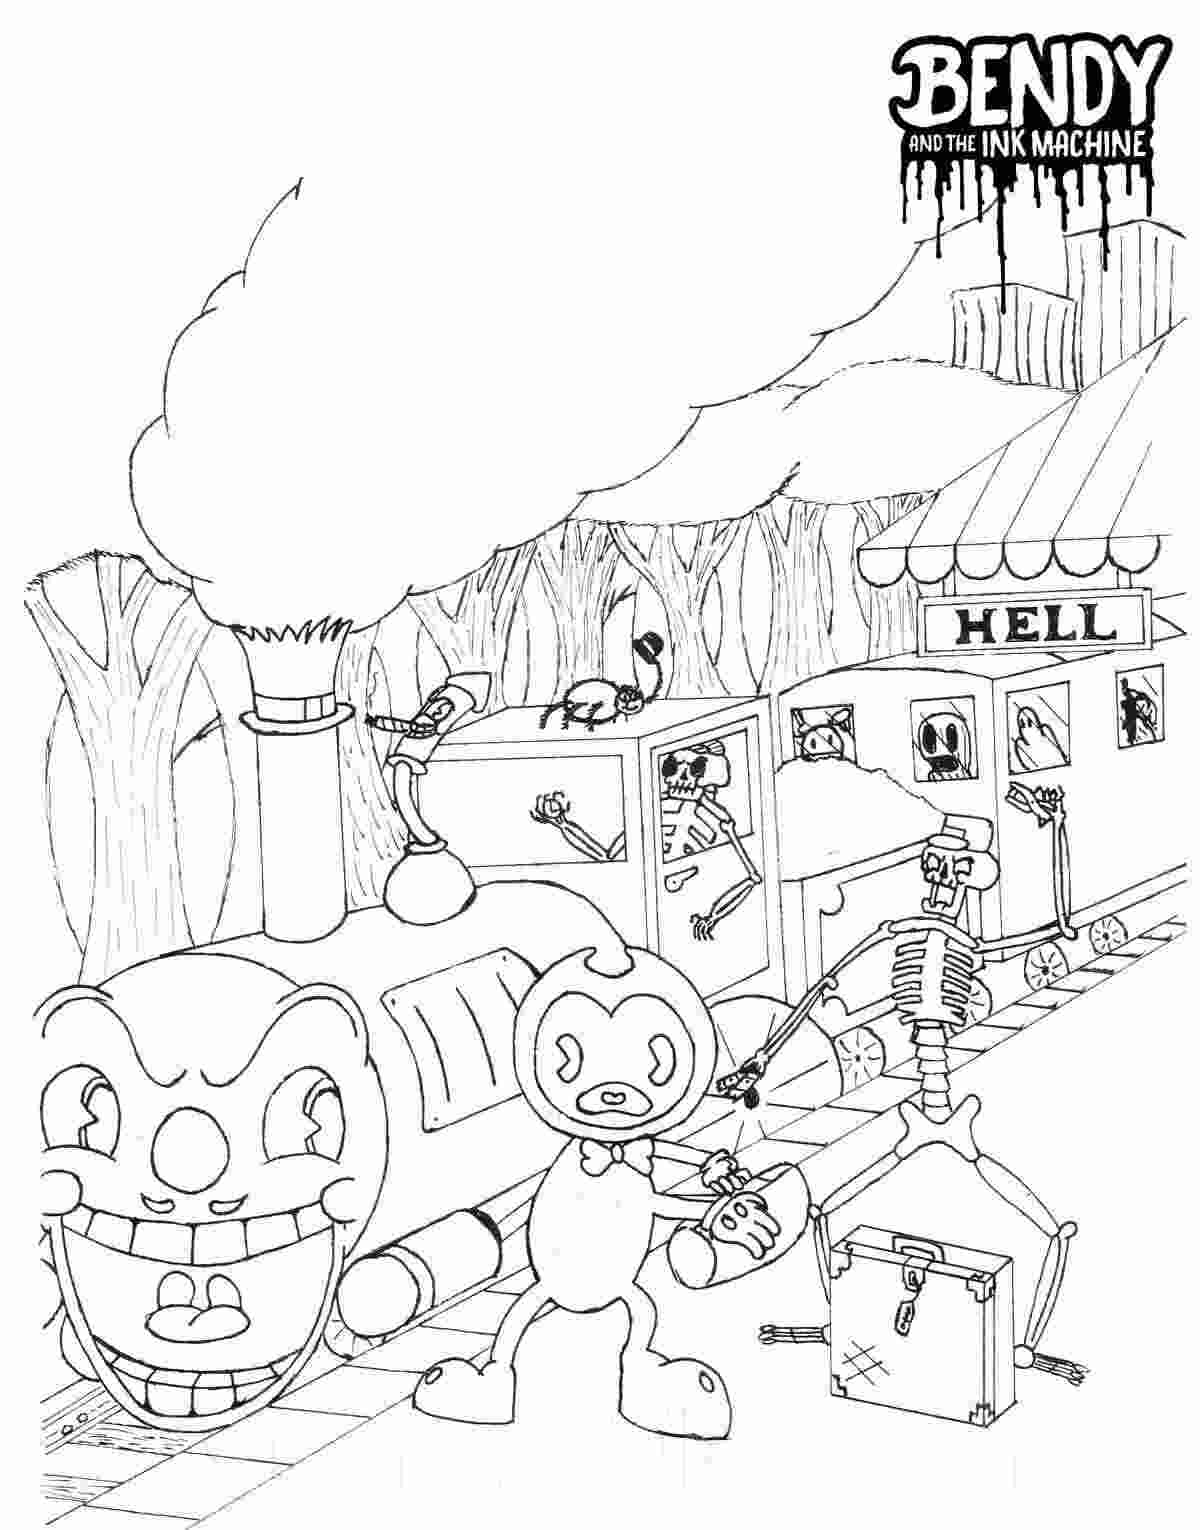 班迪靠近《班迪》中的可怕火车和《班迪》中的墨水机器